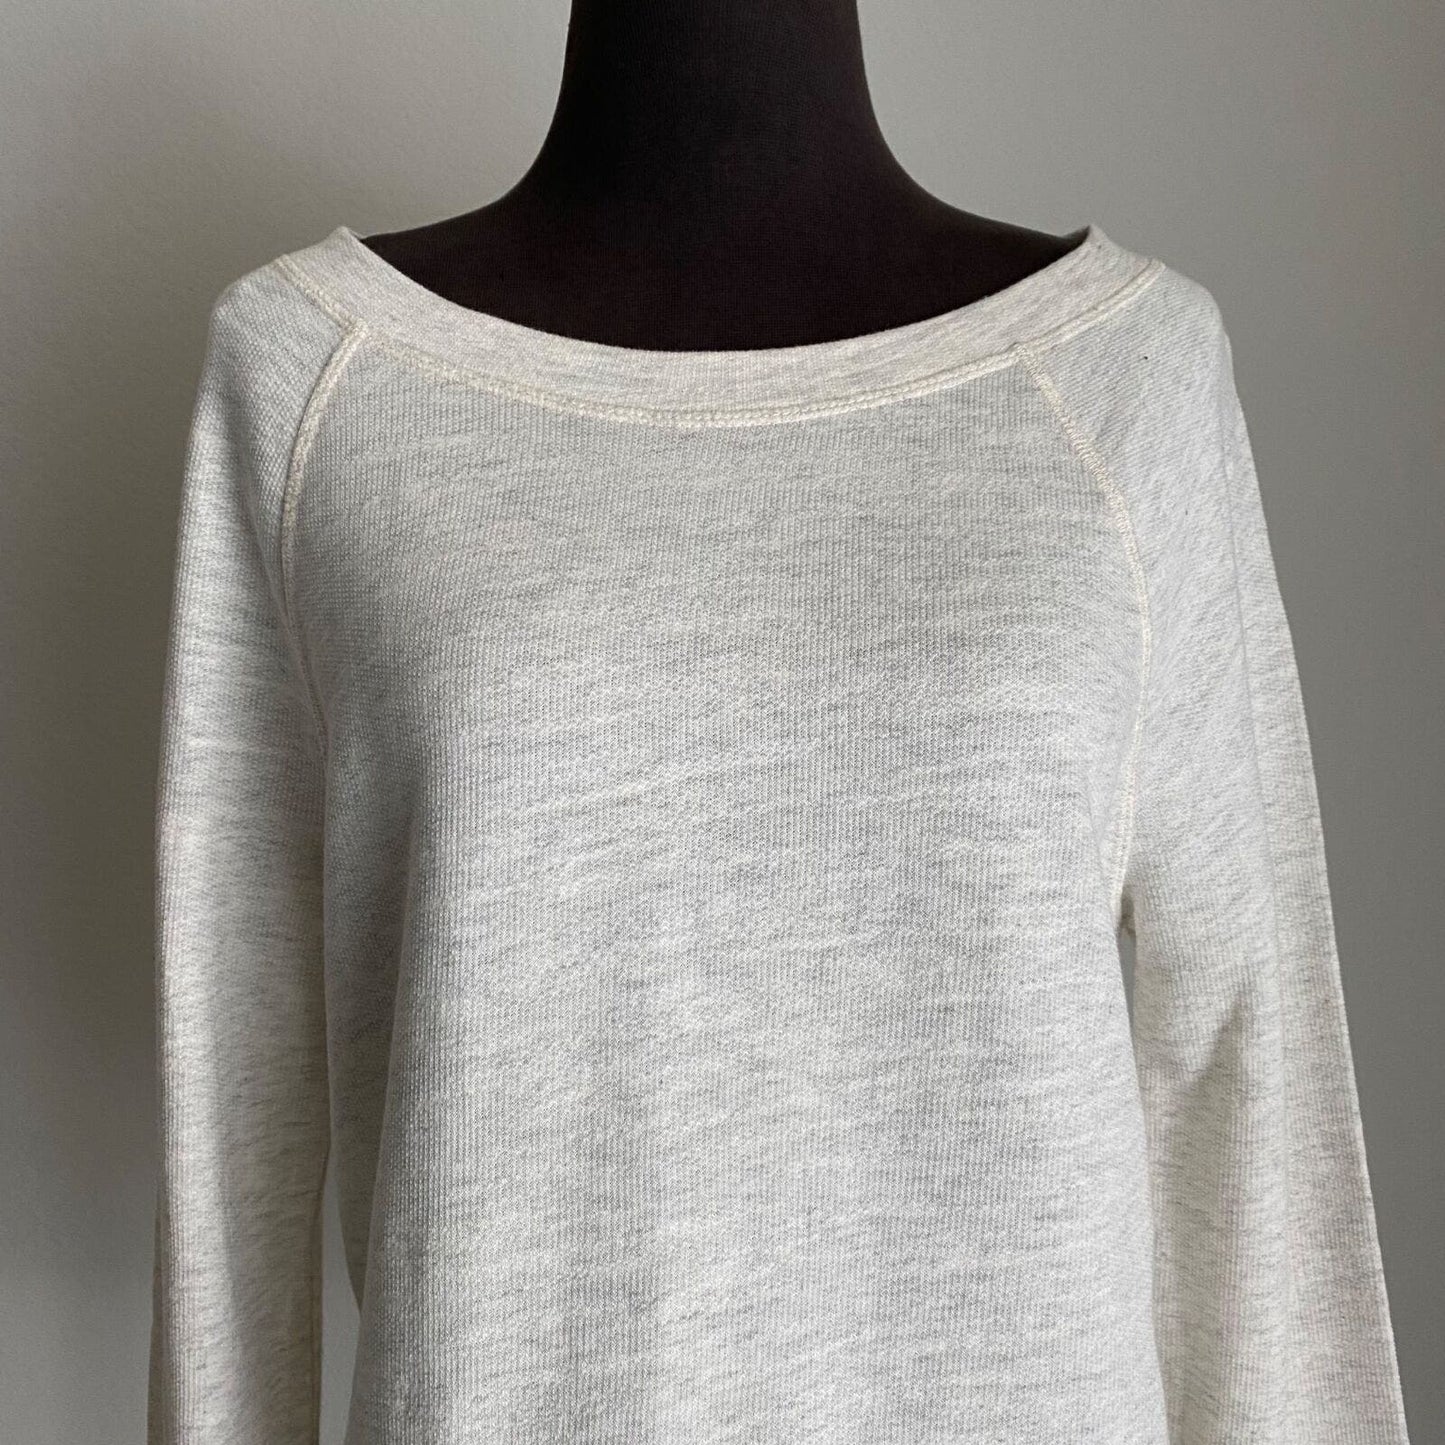 Lou & Grey sz S 100% Cotton boho knit top NWT